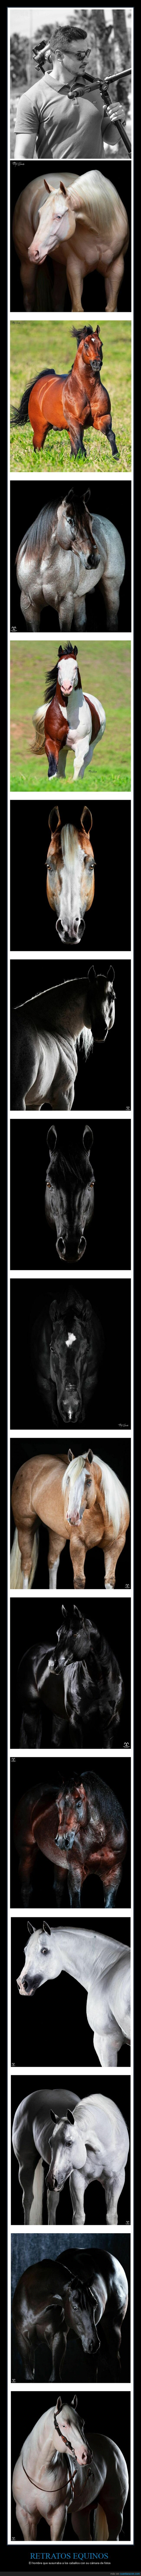 retratos equinos,caballos,fotografía